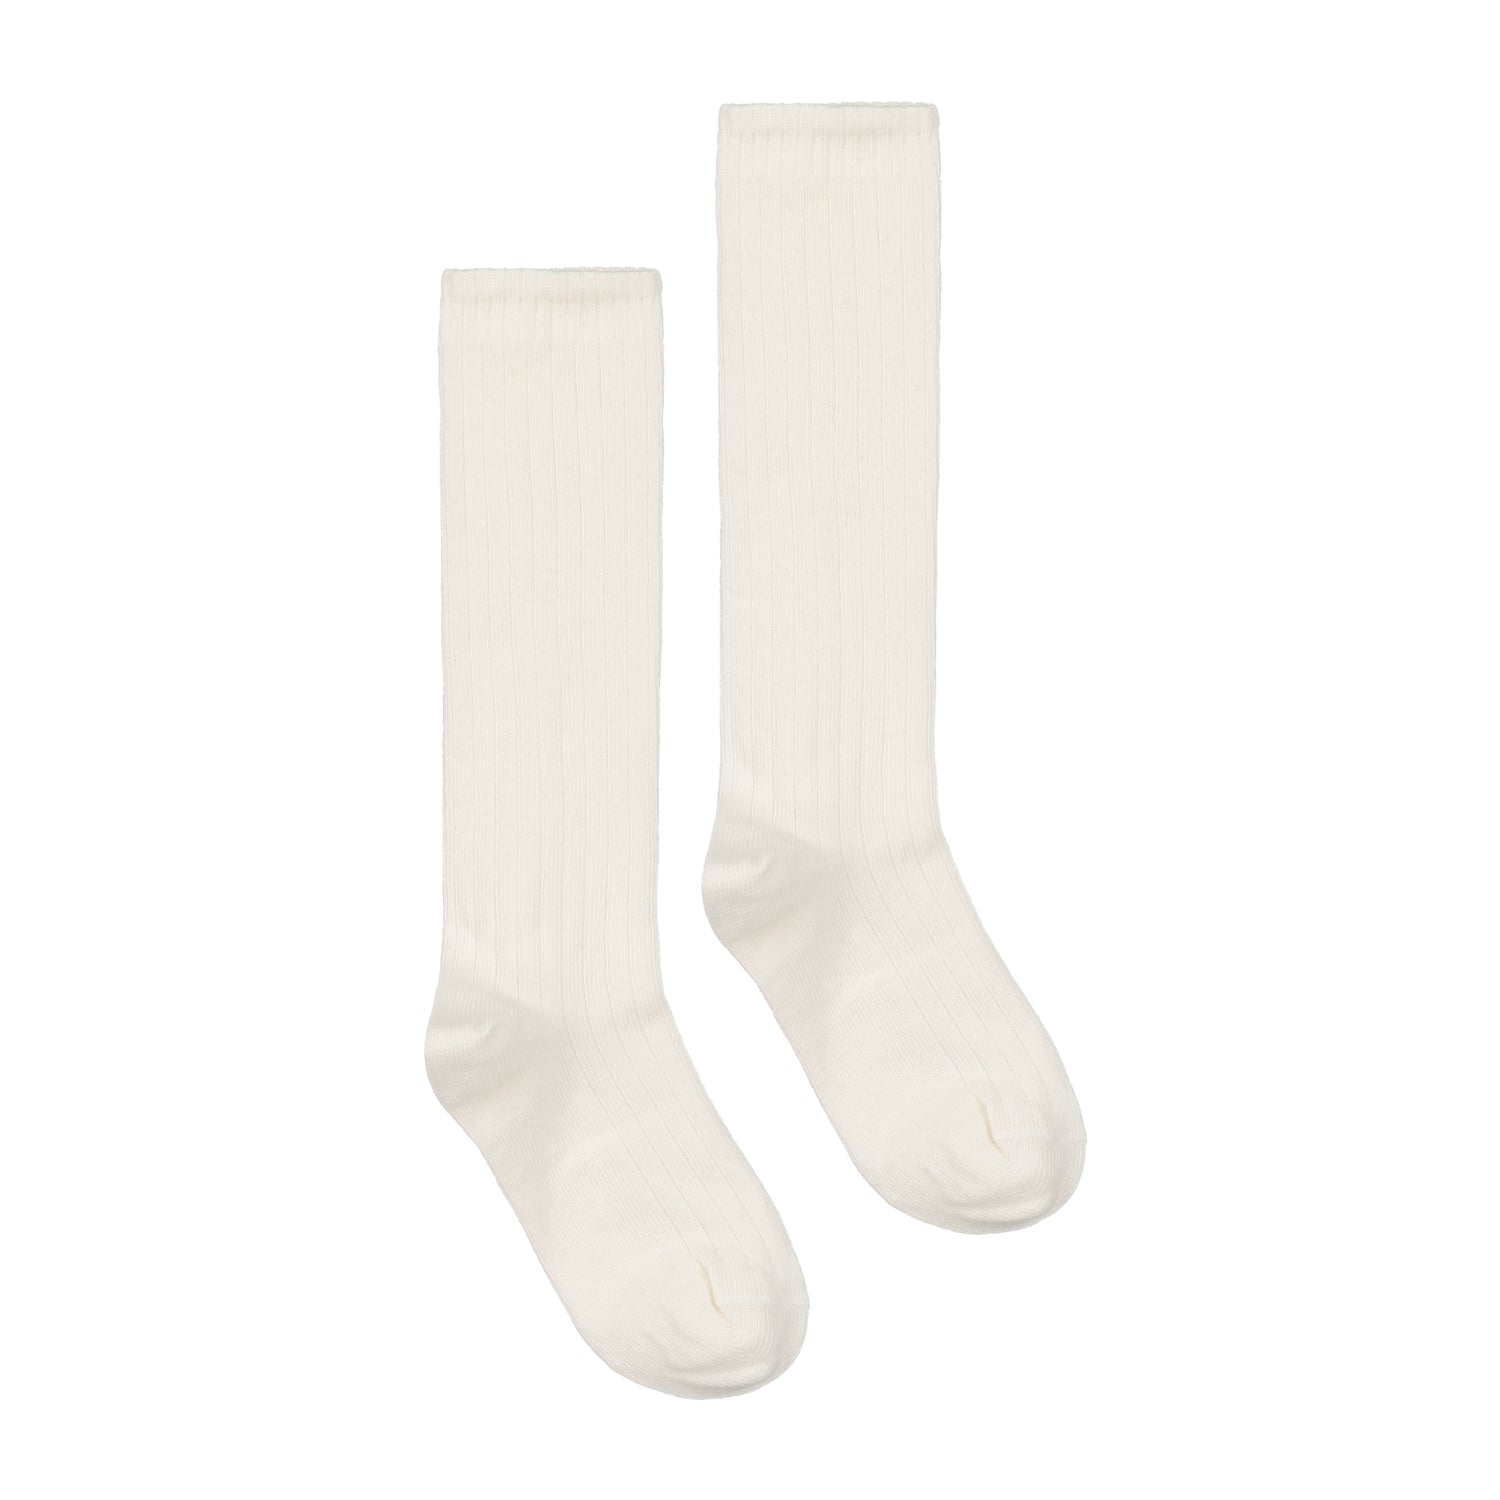 Boys & Girls White Cotton Long Socks